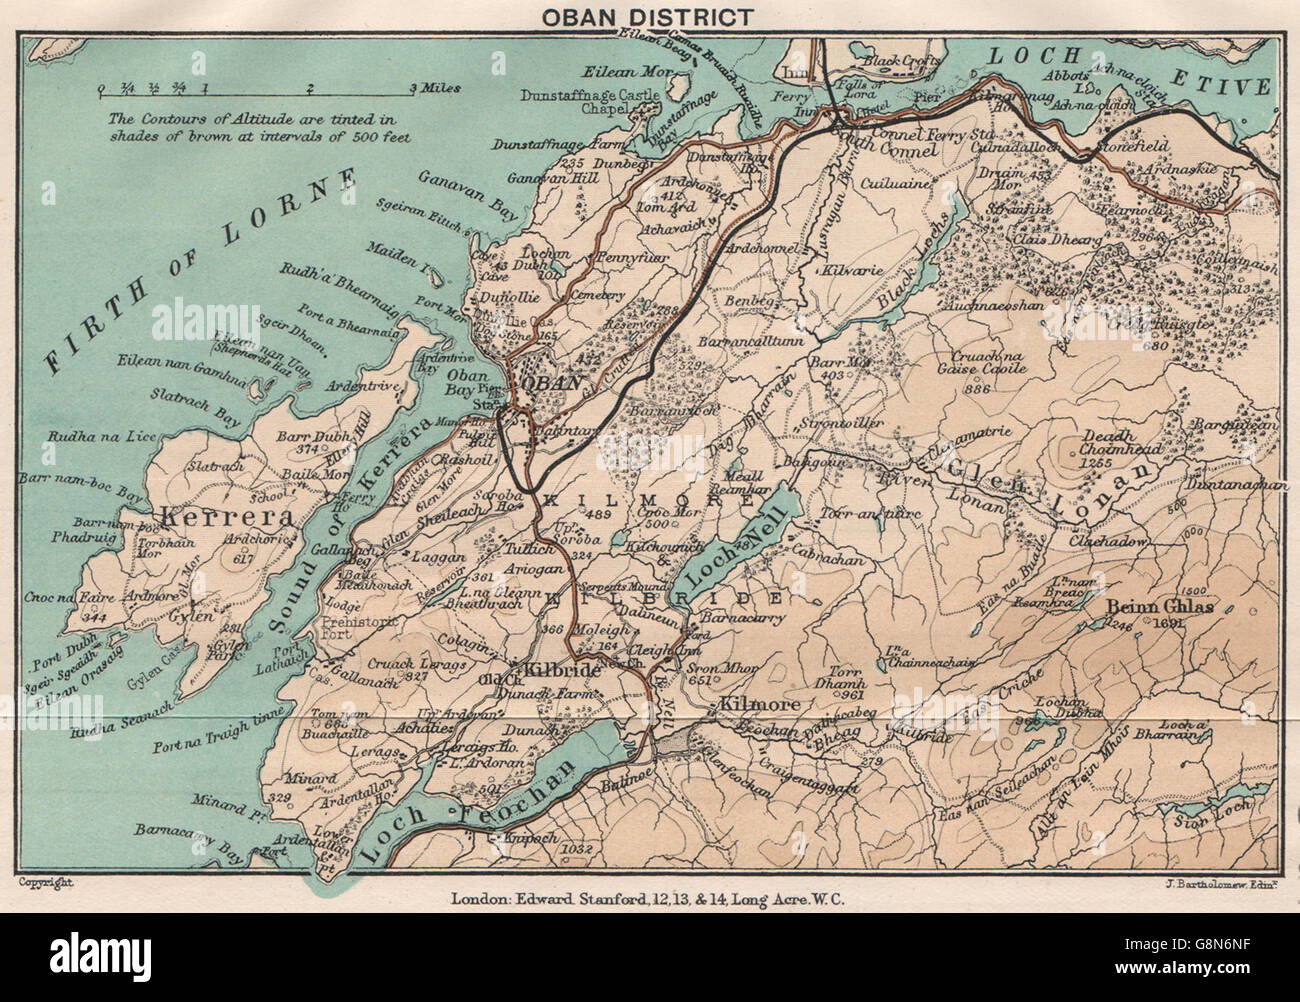 OBAN BEZIRK. Kerrera Loch Nell. Firth Of Lorne. Schottland. STANFORD, 1905-Karte Stockfoto